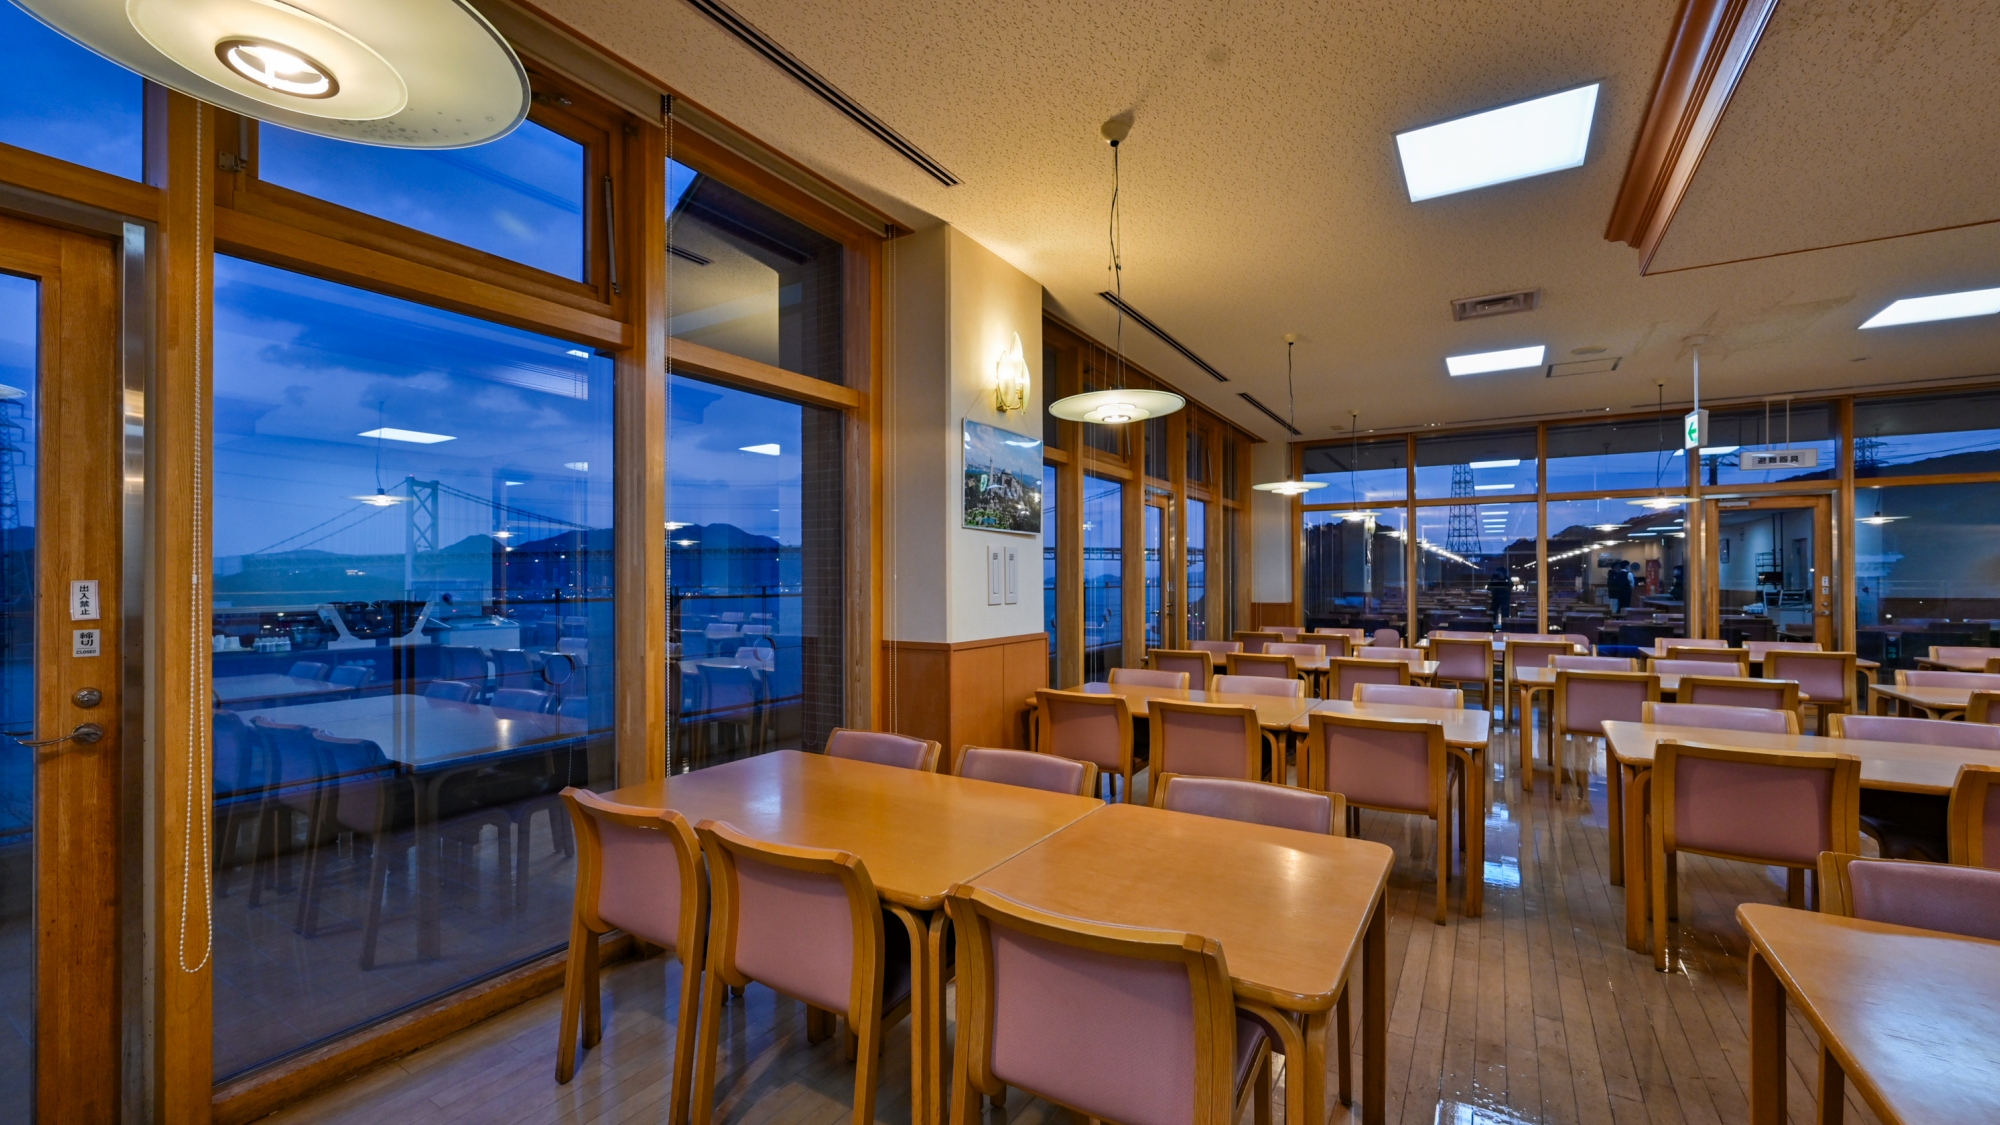 【レストラン】Ayasofya_関門橋の周囲は夕暮れから徐々に色とりどりの美しい灯りで彩られていきま